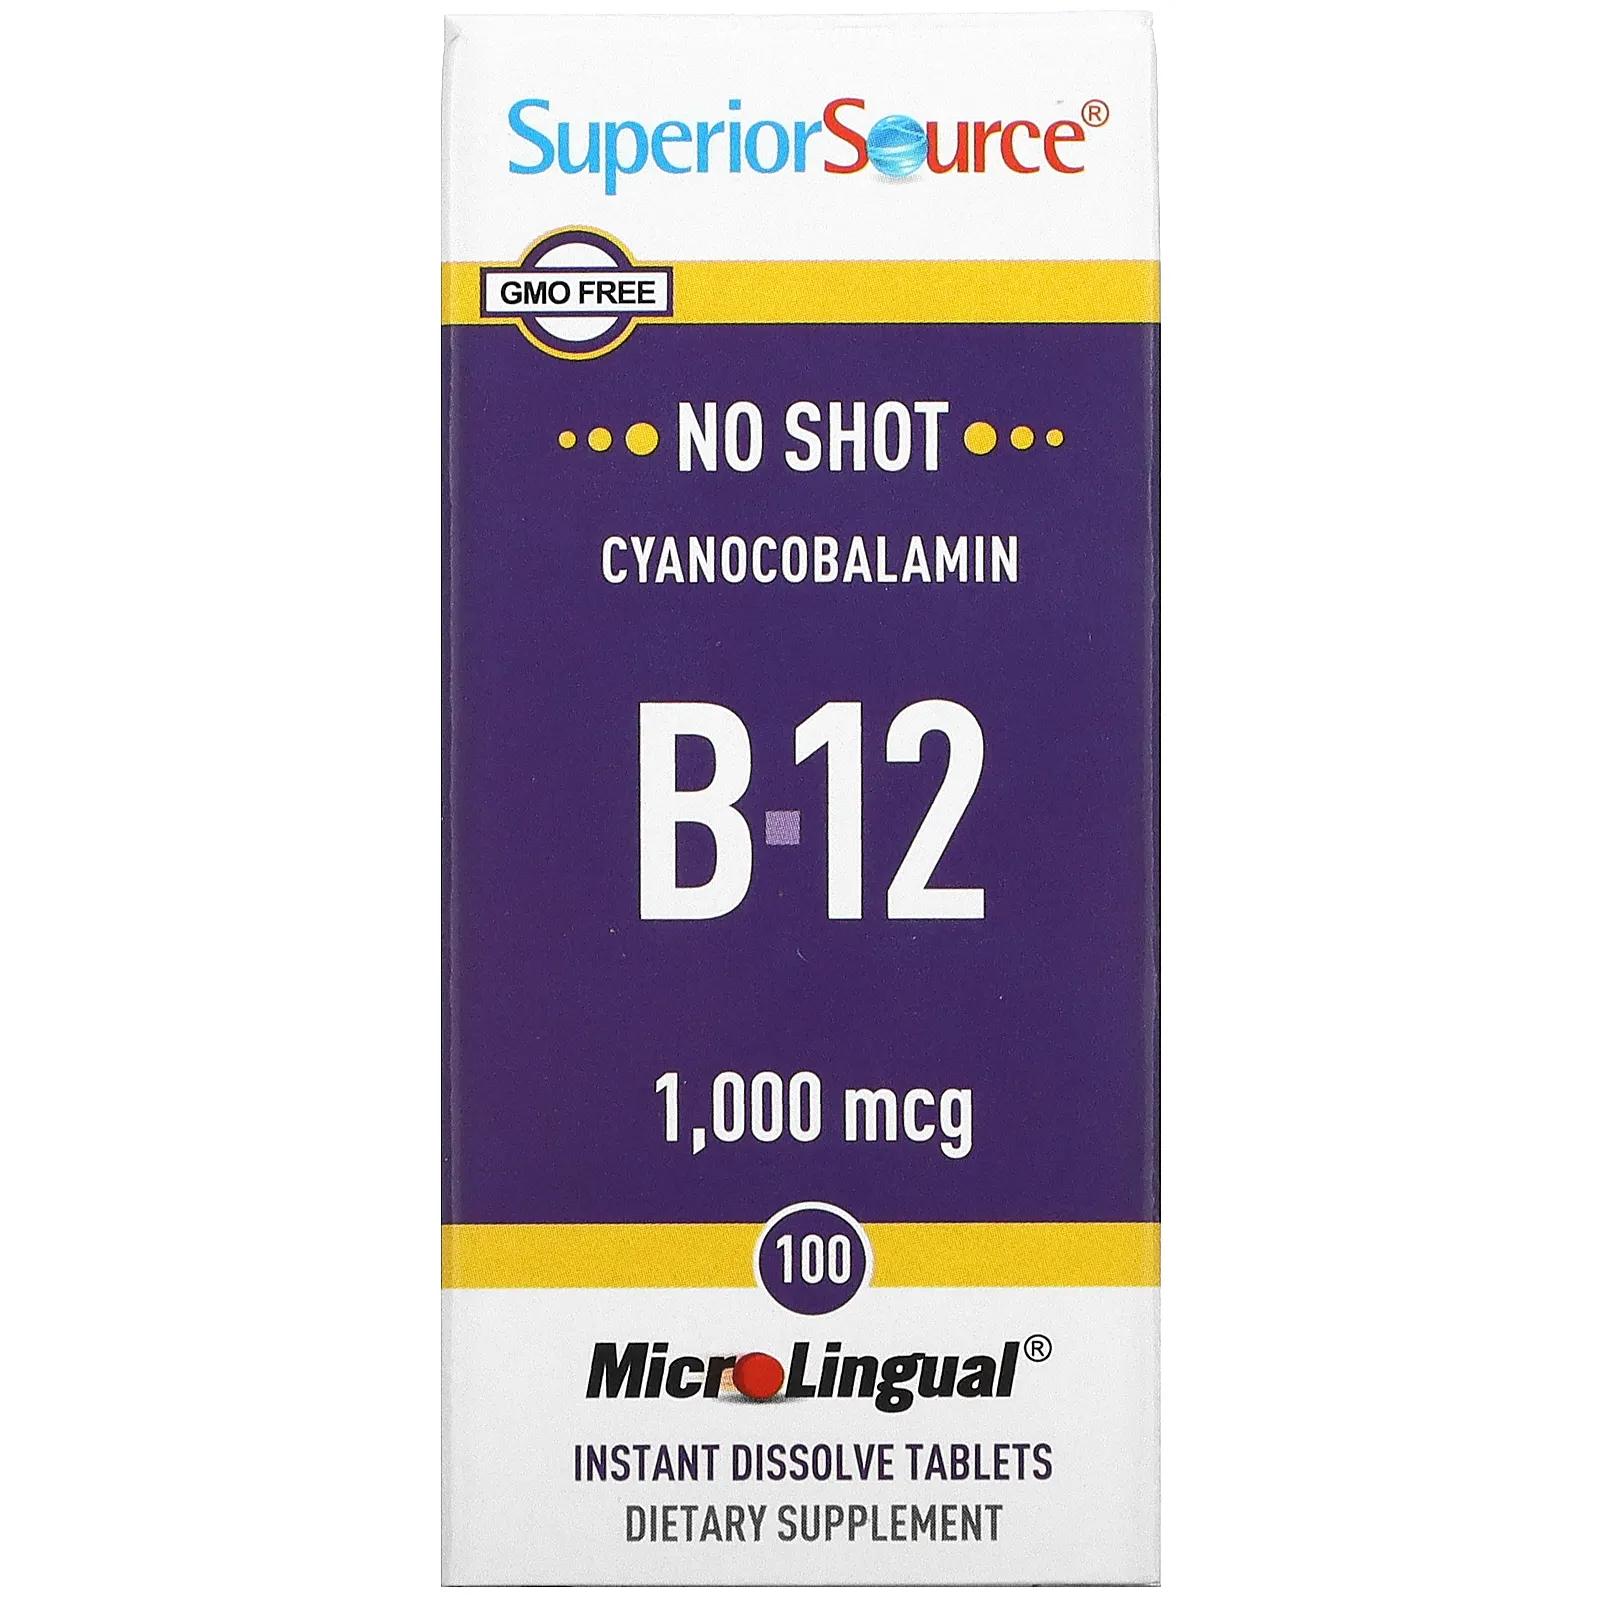 цена Superior Source MicroLingual цианокобаламин B12 1000 мкг 100 таблеток